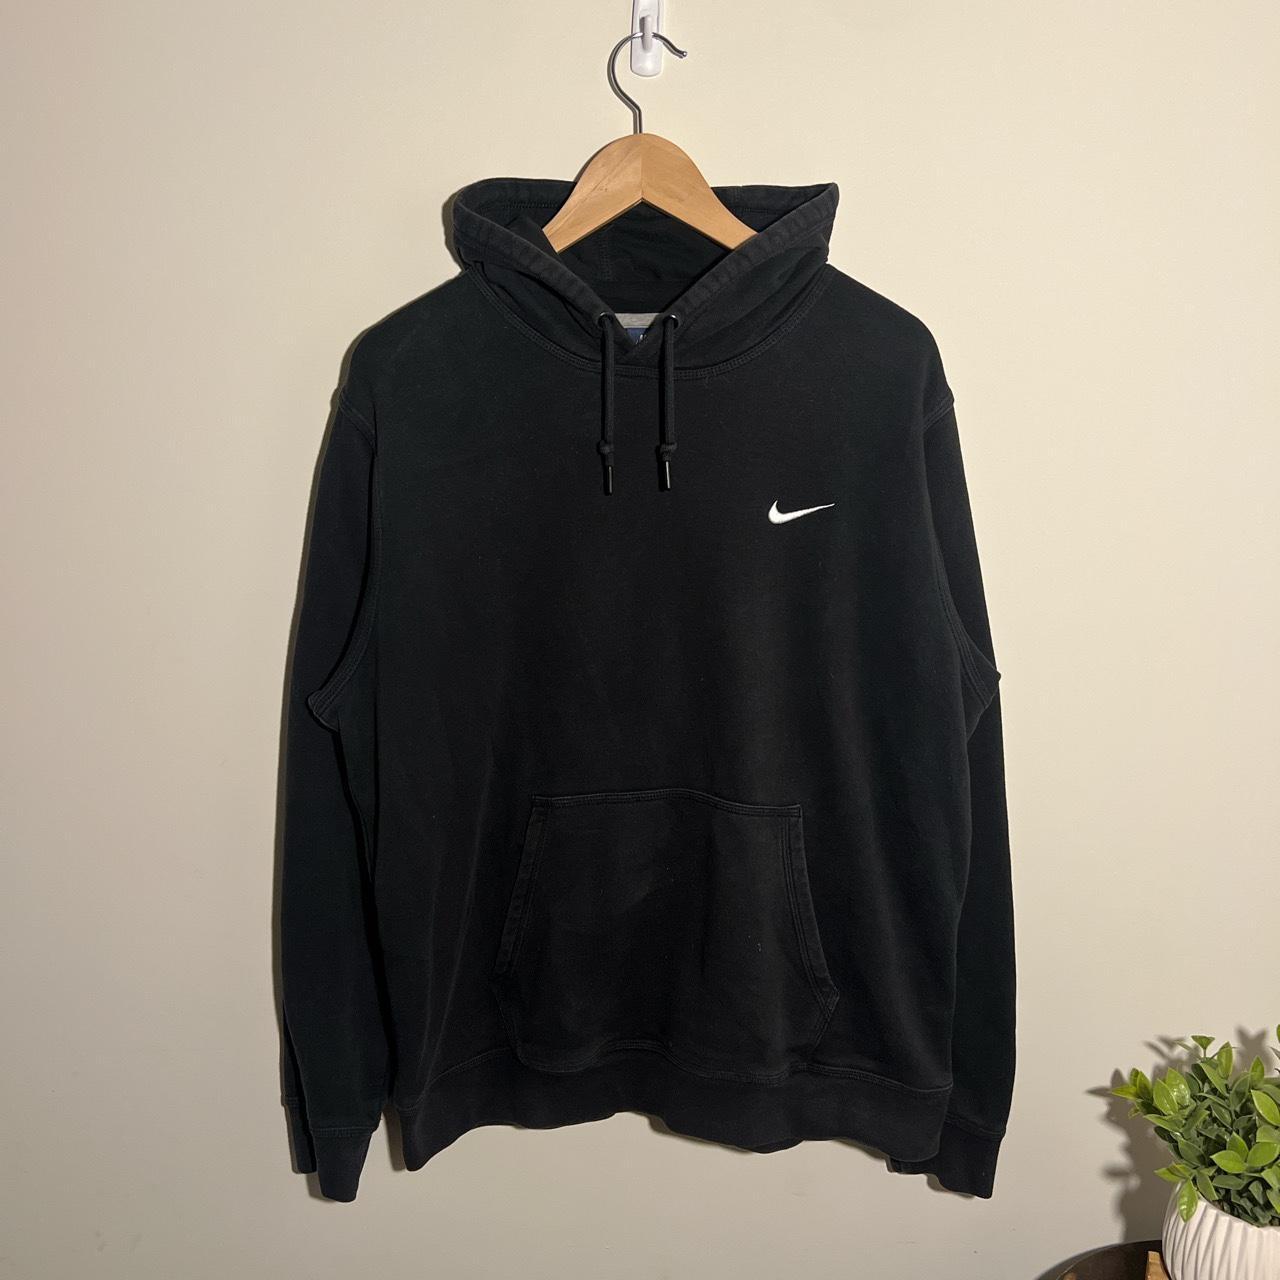 Modern Black essential nike hoodie, size XL- true to... - Depop